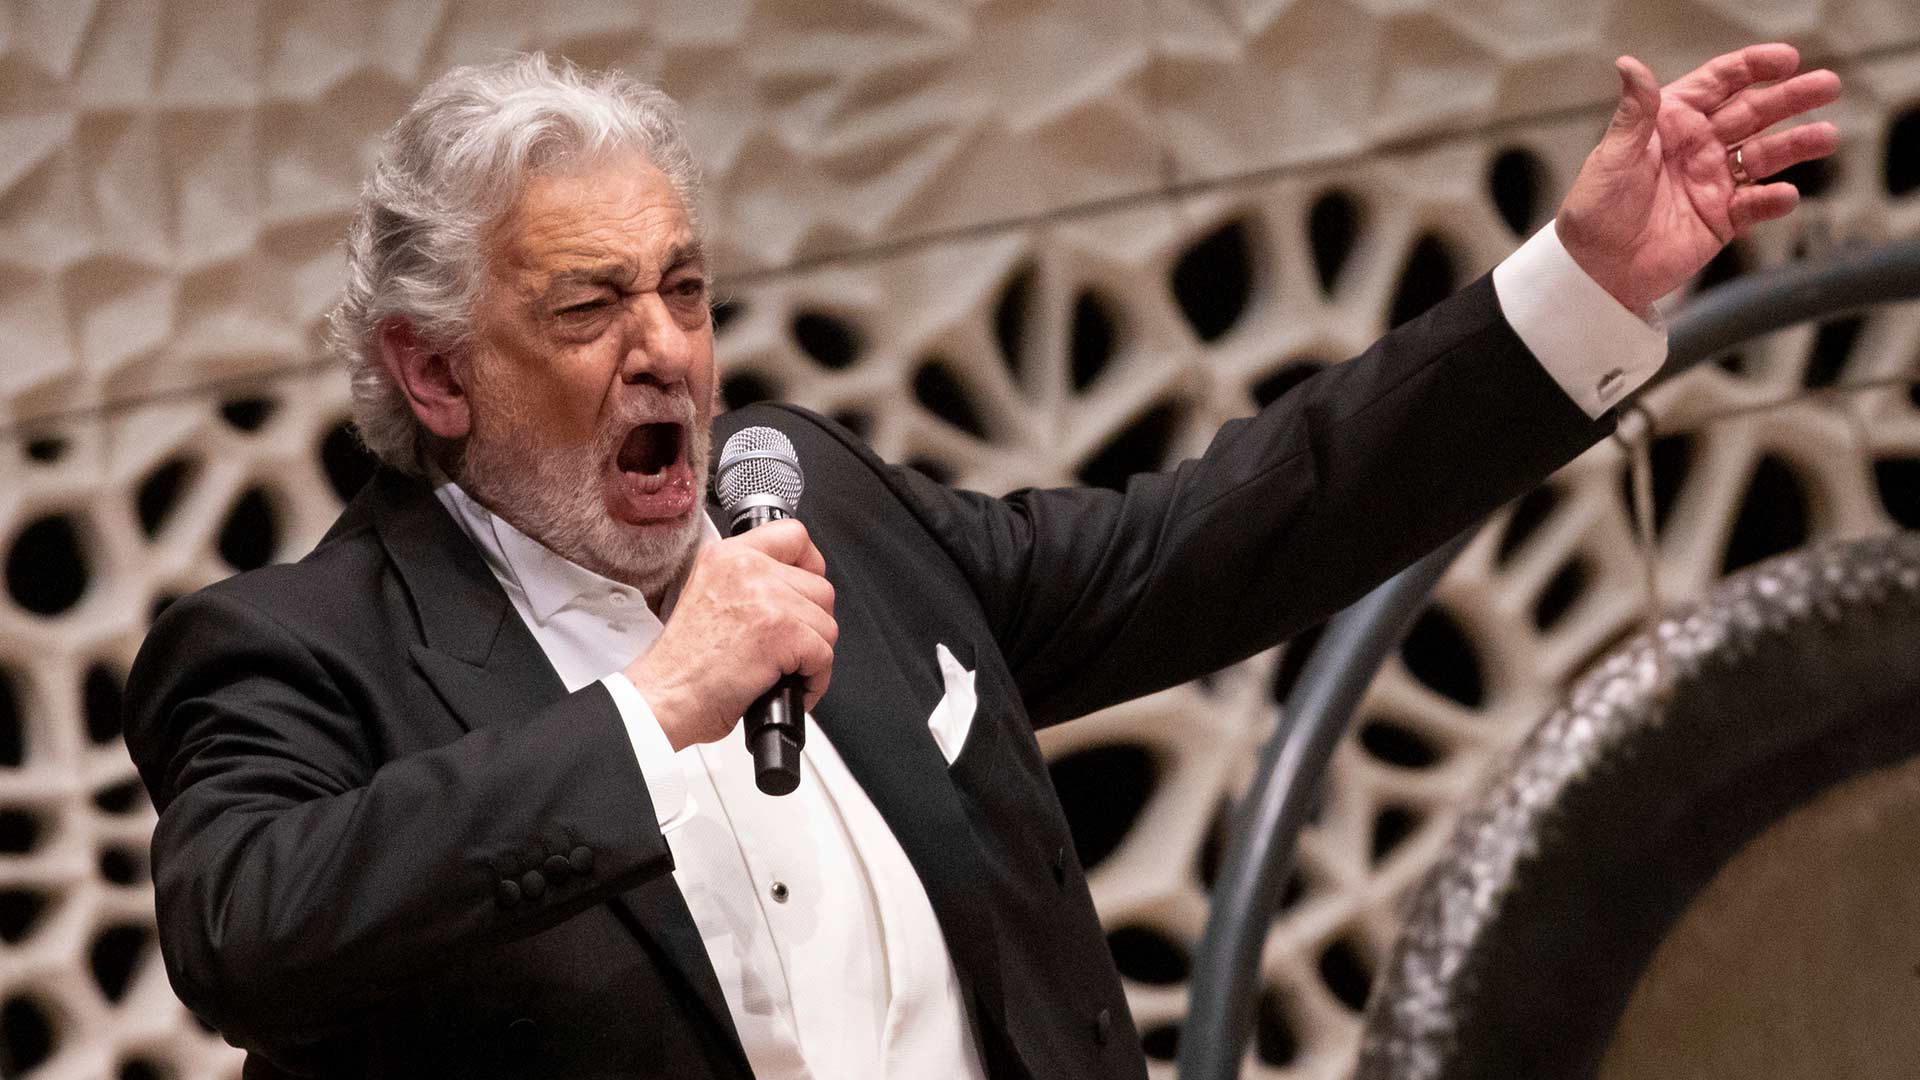 El Ministerio de Cultura cancela un concierto de Plácido Domingo "en solidaridad con las mujeres"